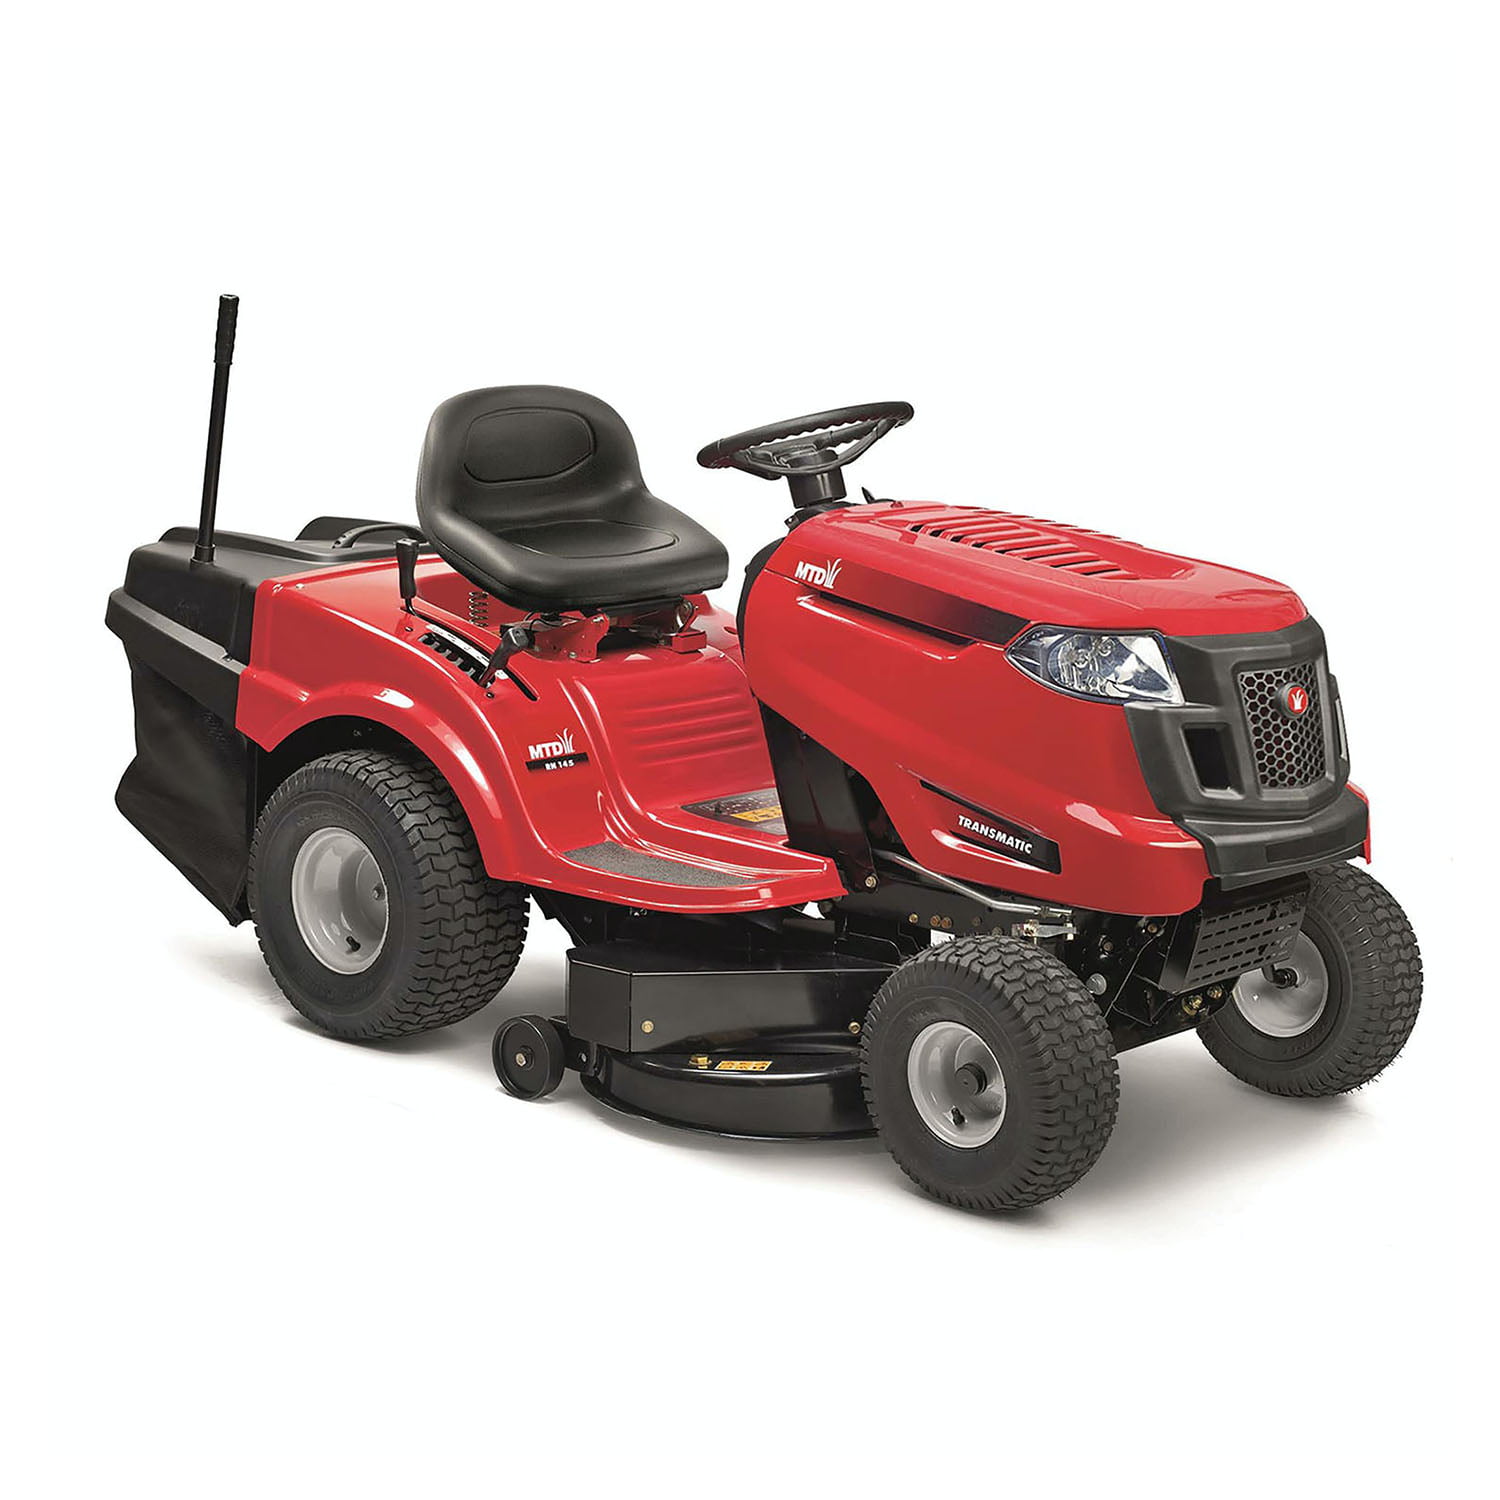 MTD traktor kosačica kosilica za travu SMART RN 145 13A7765E600 -  masineialati.ba - Profesionalni i hobi alati i mašine